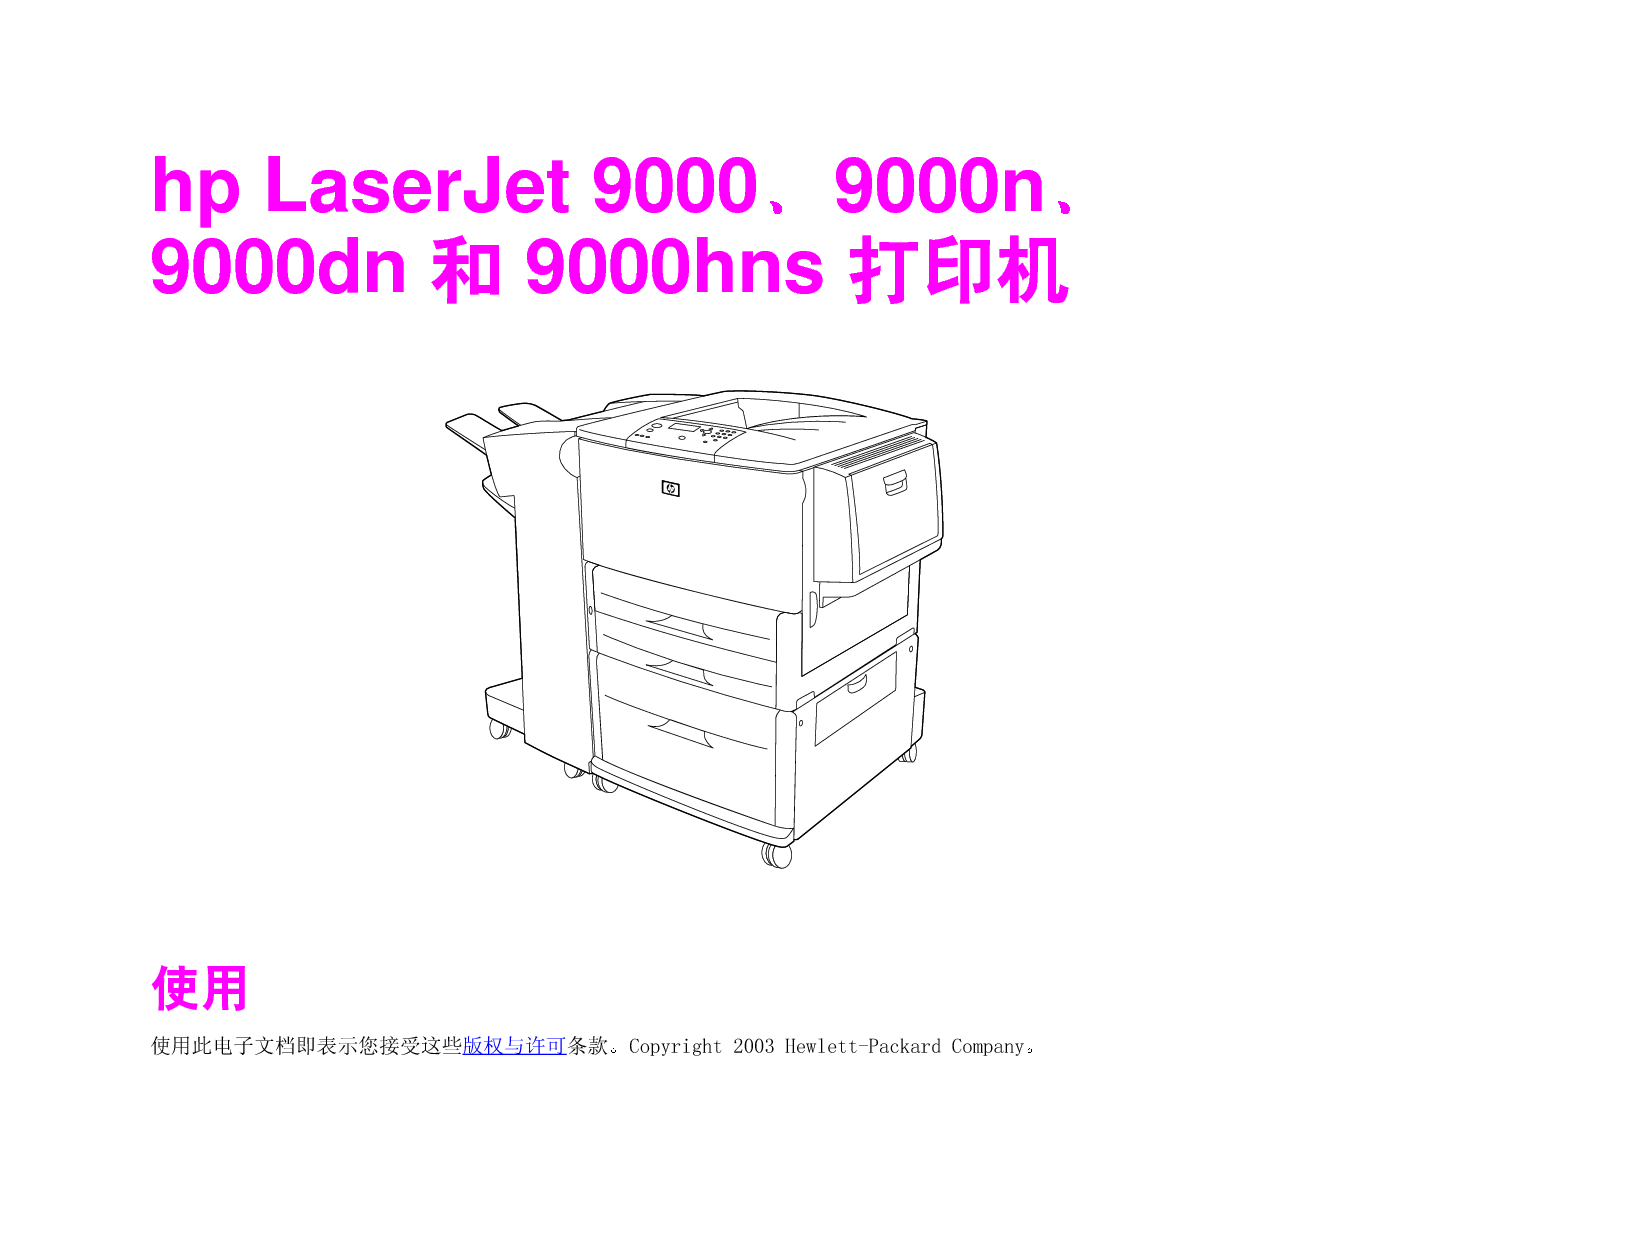 惠普 HP LaserJet 9000 用户指南 封面